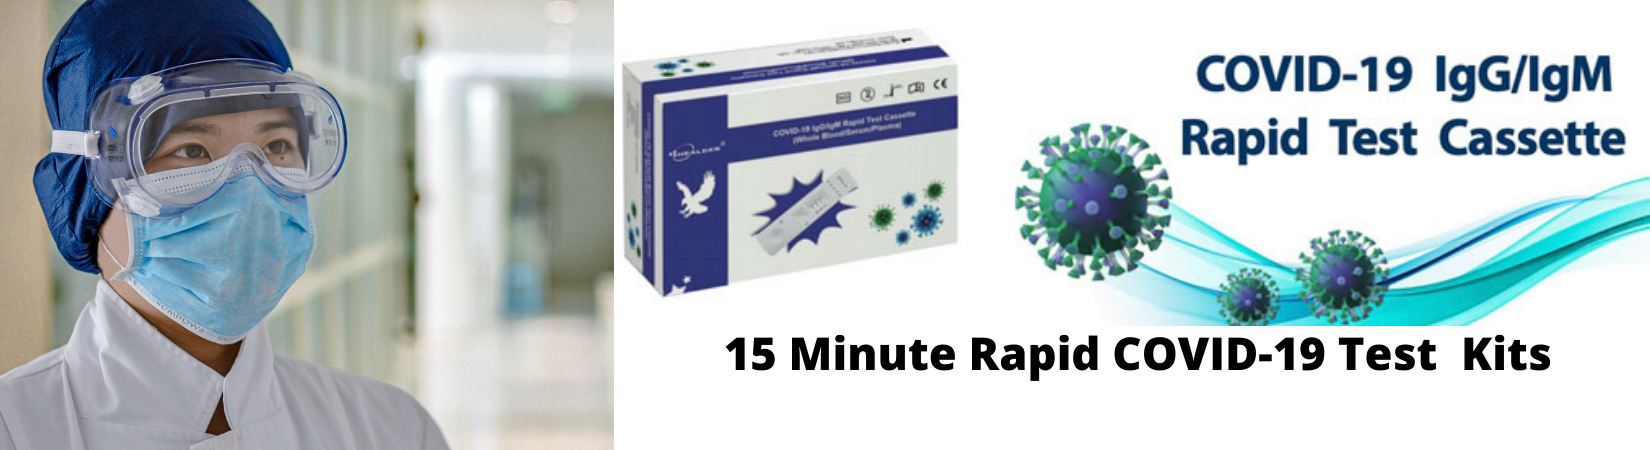 15 Minute Rapid COVID-19 Test Kits